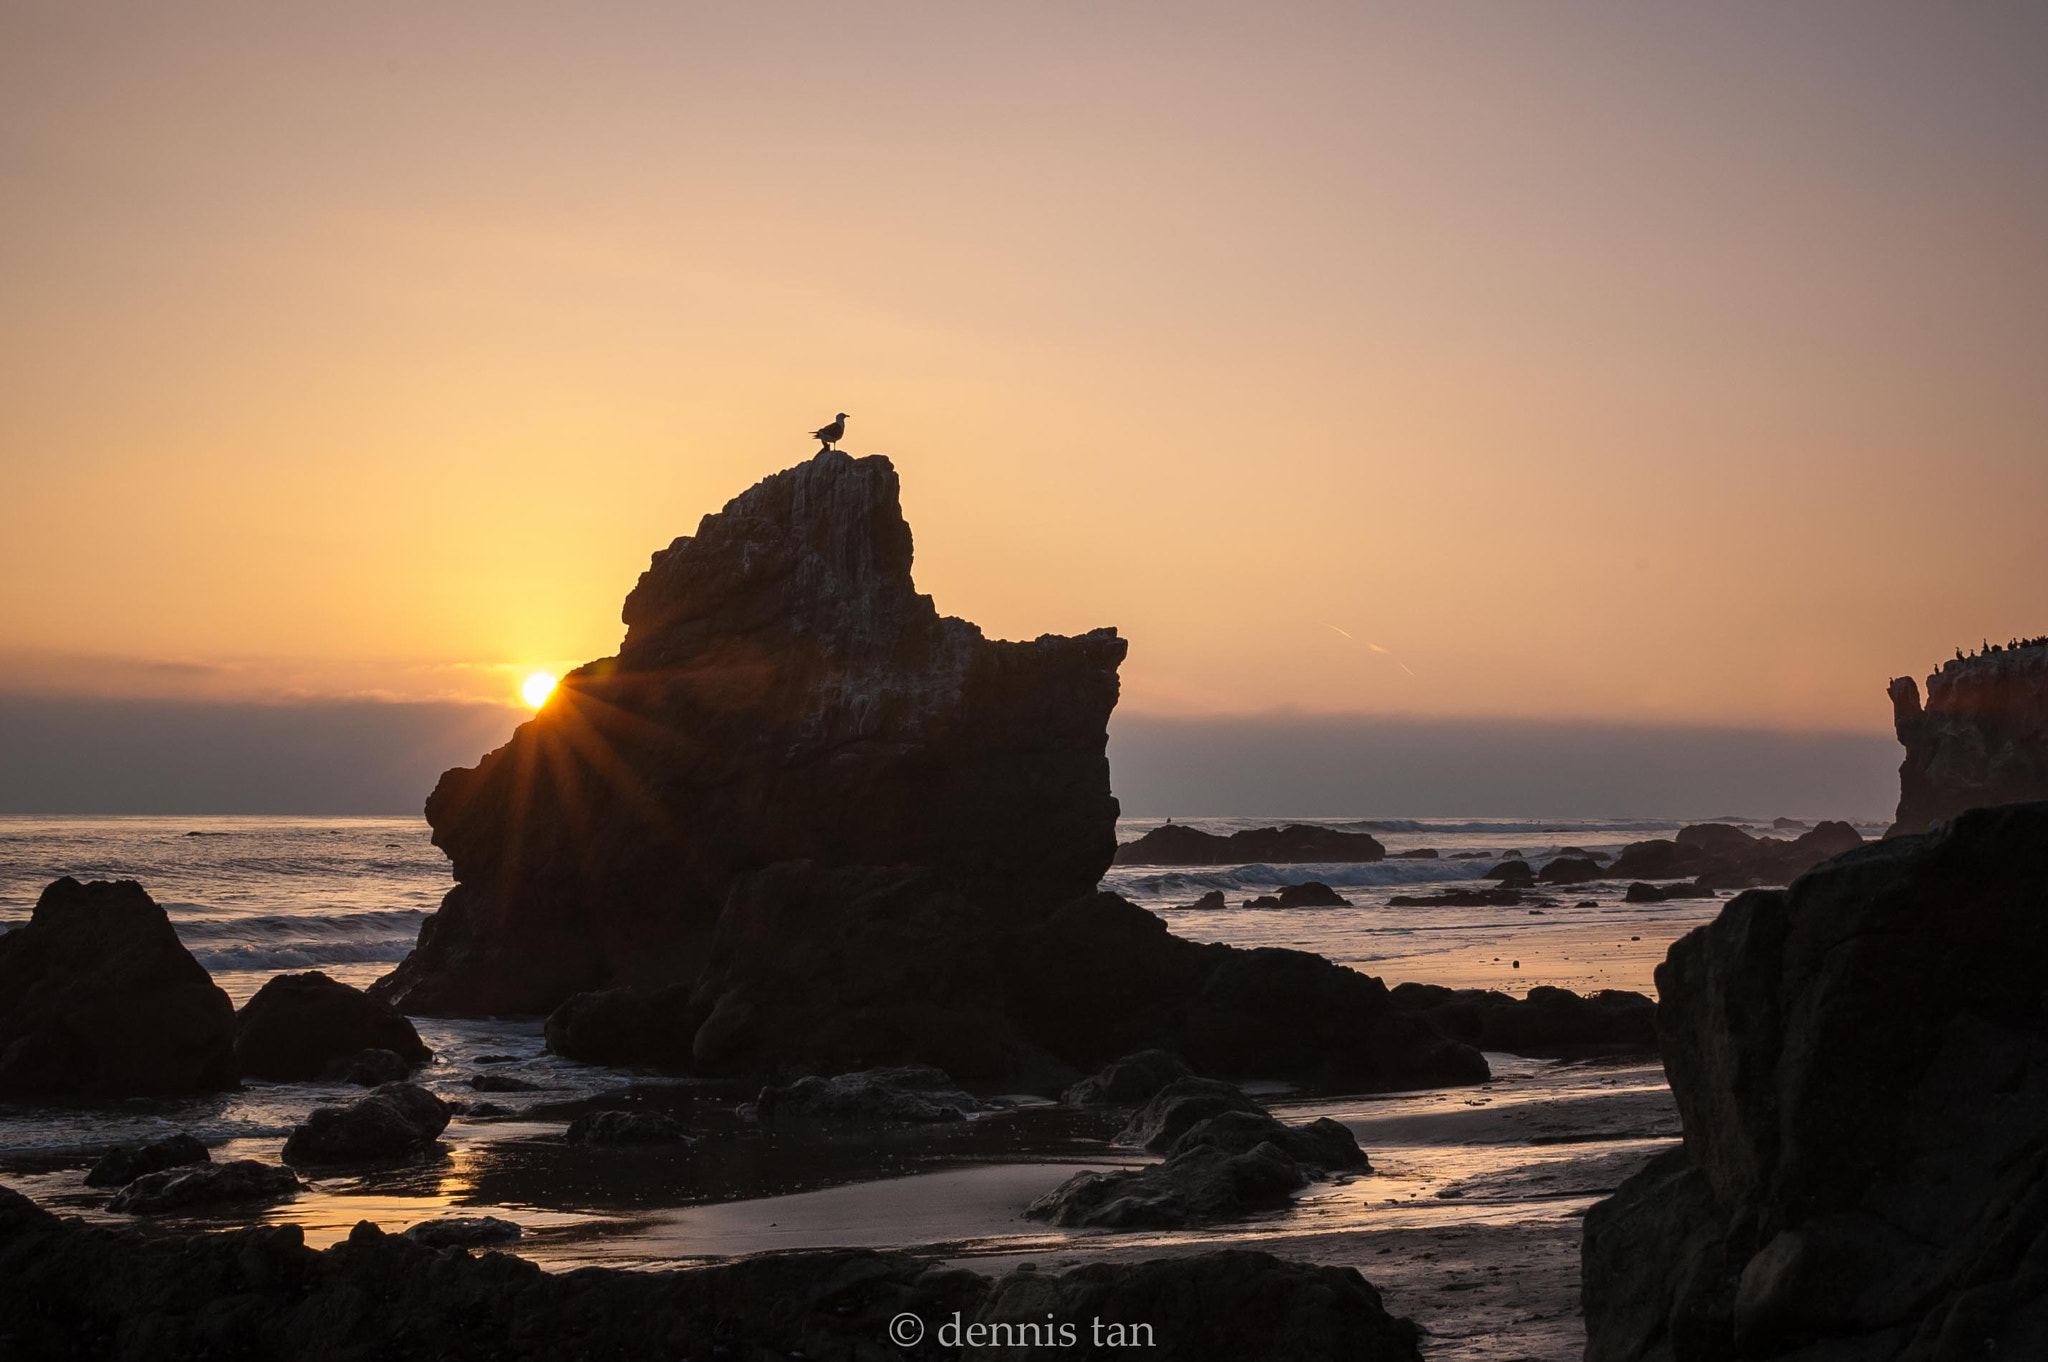 Nikon D70s + AF Zoom-Nikkor 35-70mm f/2.8D sample photo. Sunset seascape photography